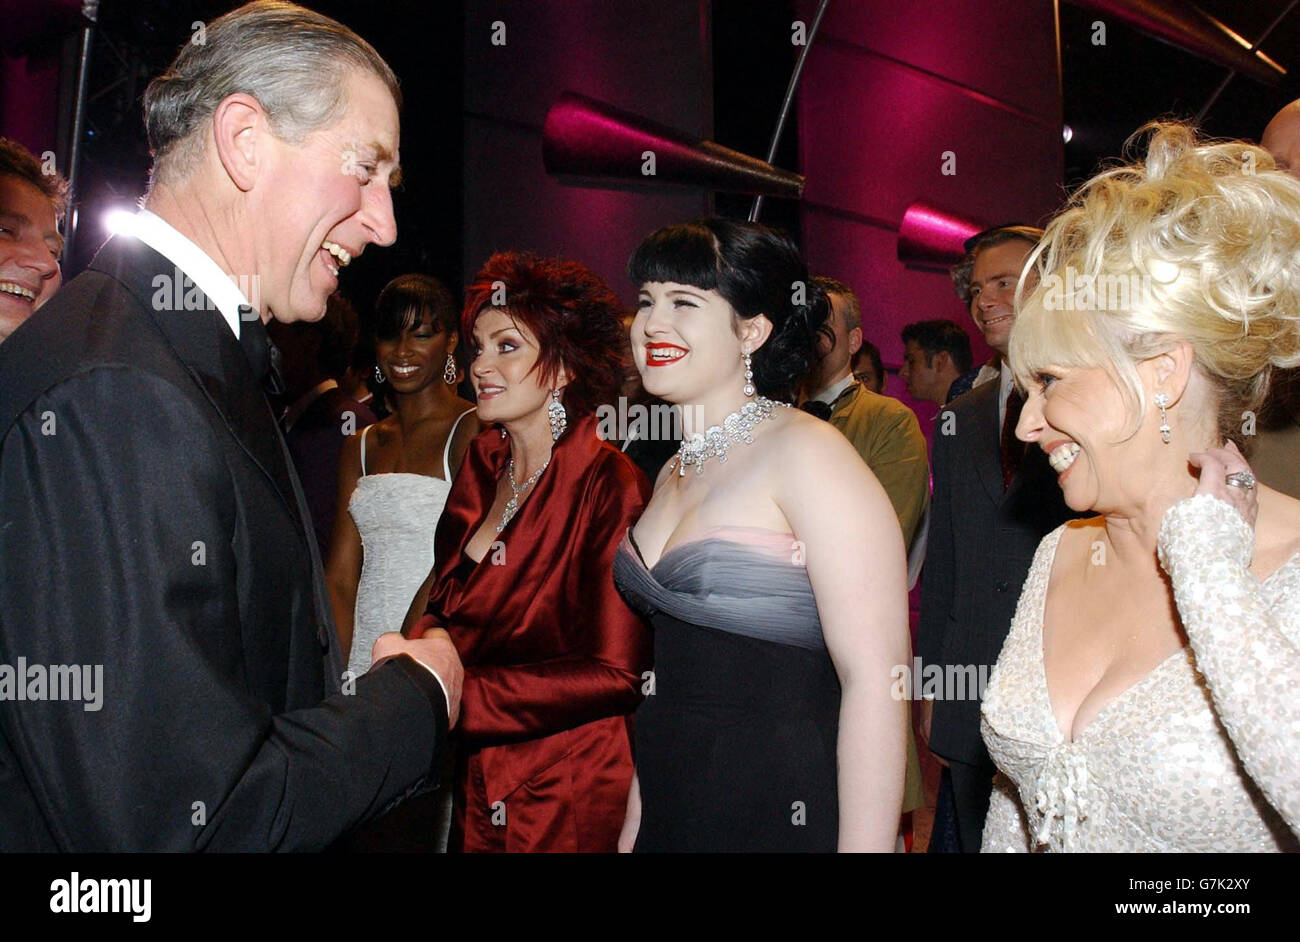 Le Prince de Galles plaisanta avec Barabara Windsor (à droite) et Kelly Osbourne. Banque D'Images